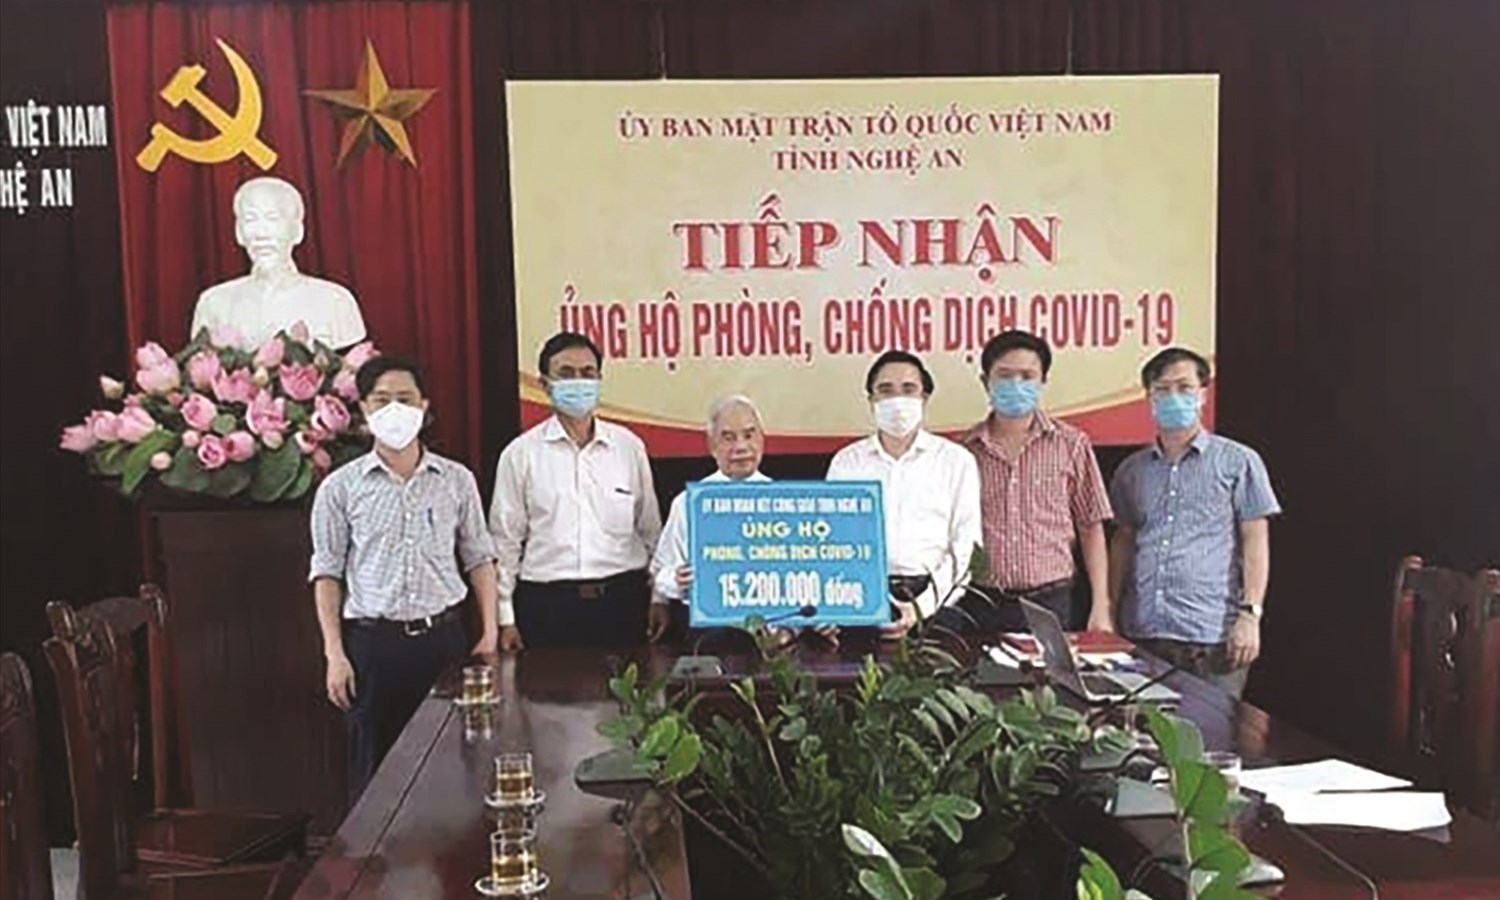 Đại diện Ủy ban đoàn kết công giáo tỉnh Nghệ An trao tiền ủng hộ chống dịch Covid-19